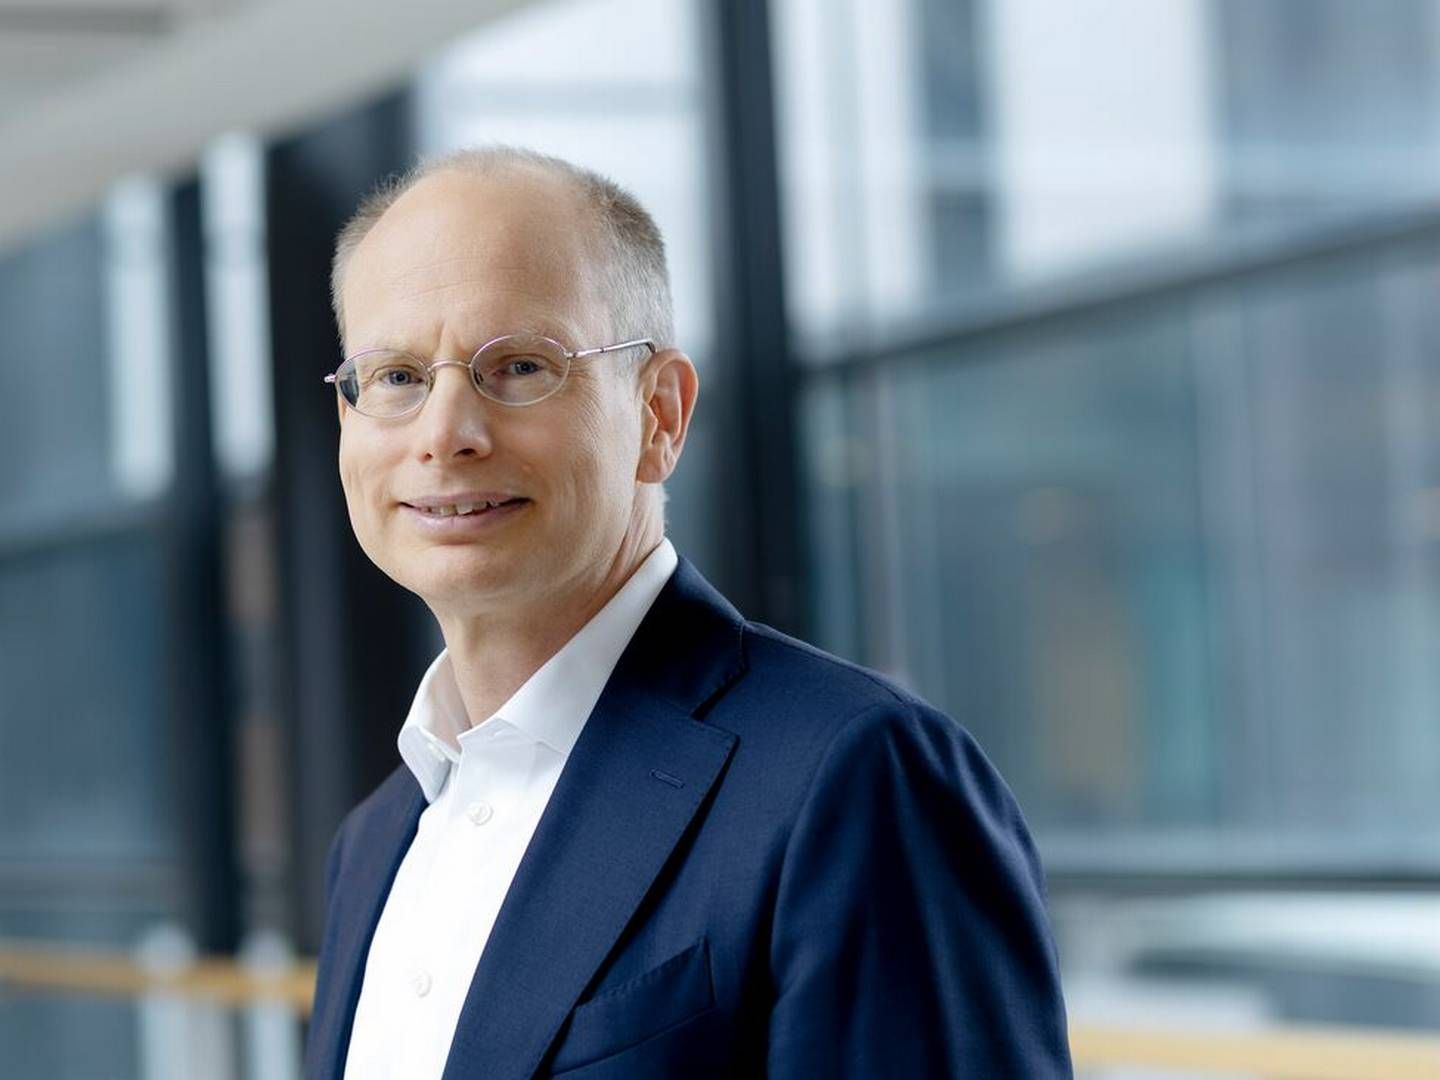 Håkan Agnevall is CEO and president of Finnish technology supplier Wärtsilä. | Photo: Wärtsilä Corporation